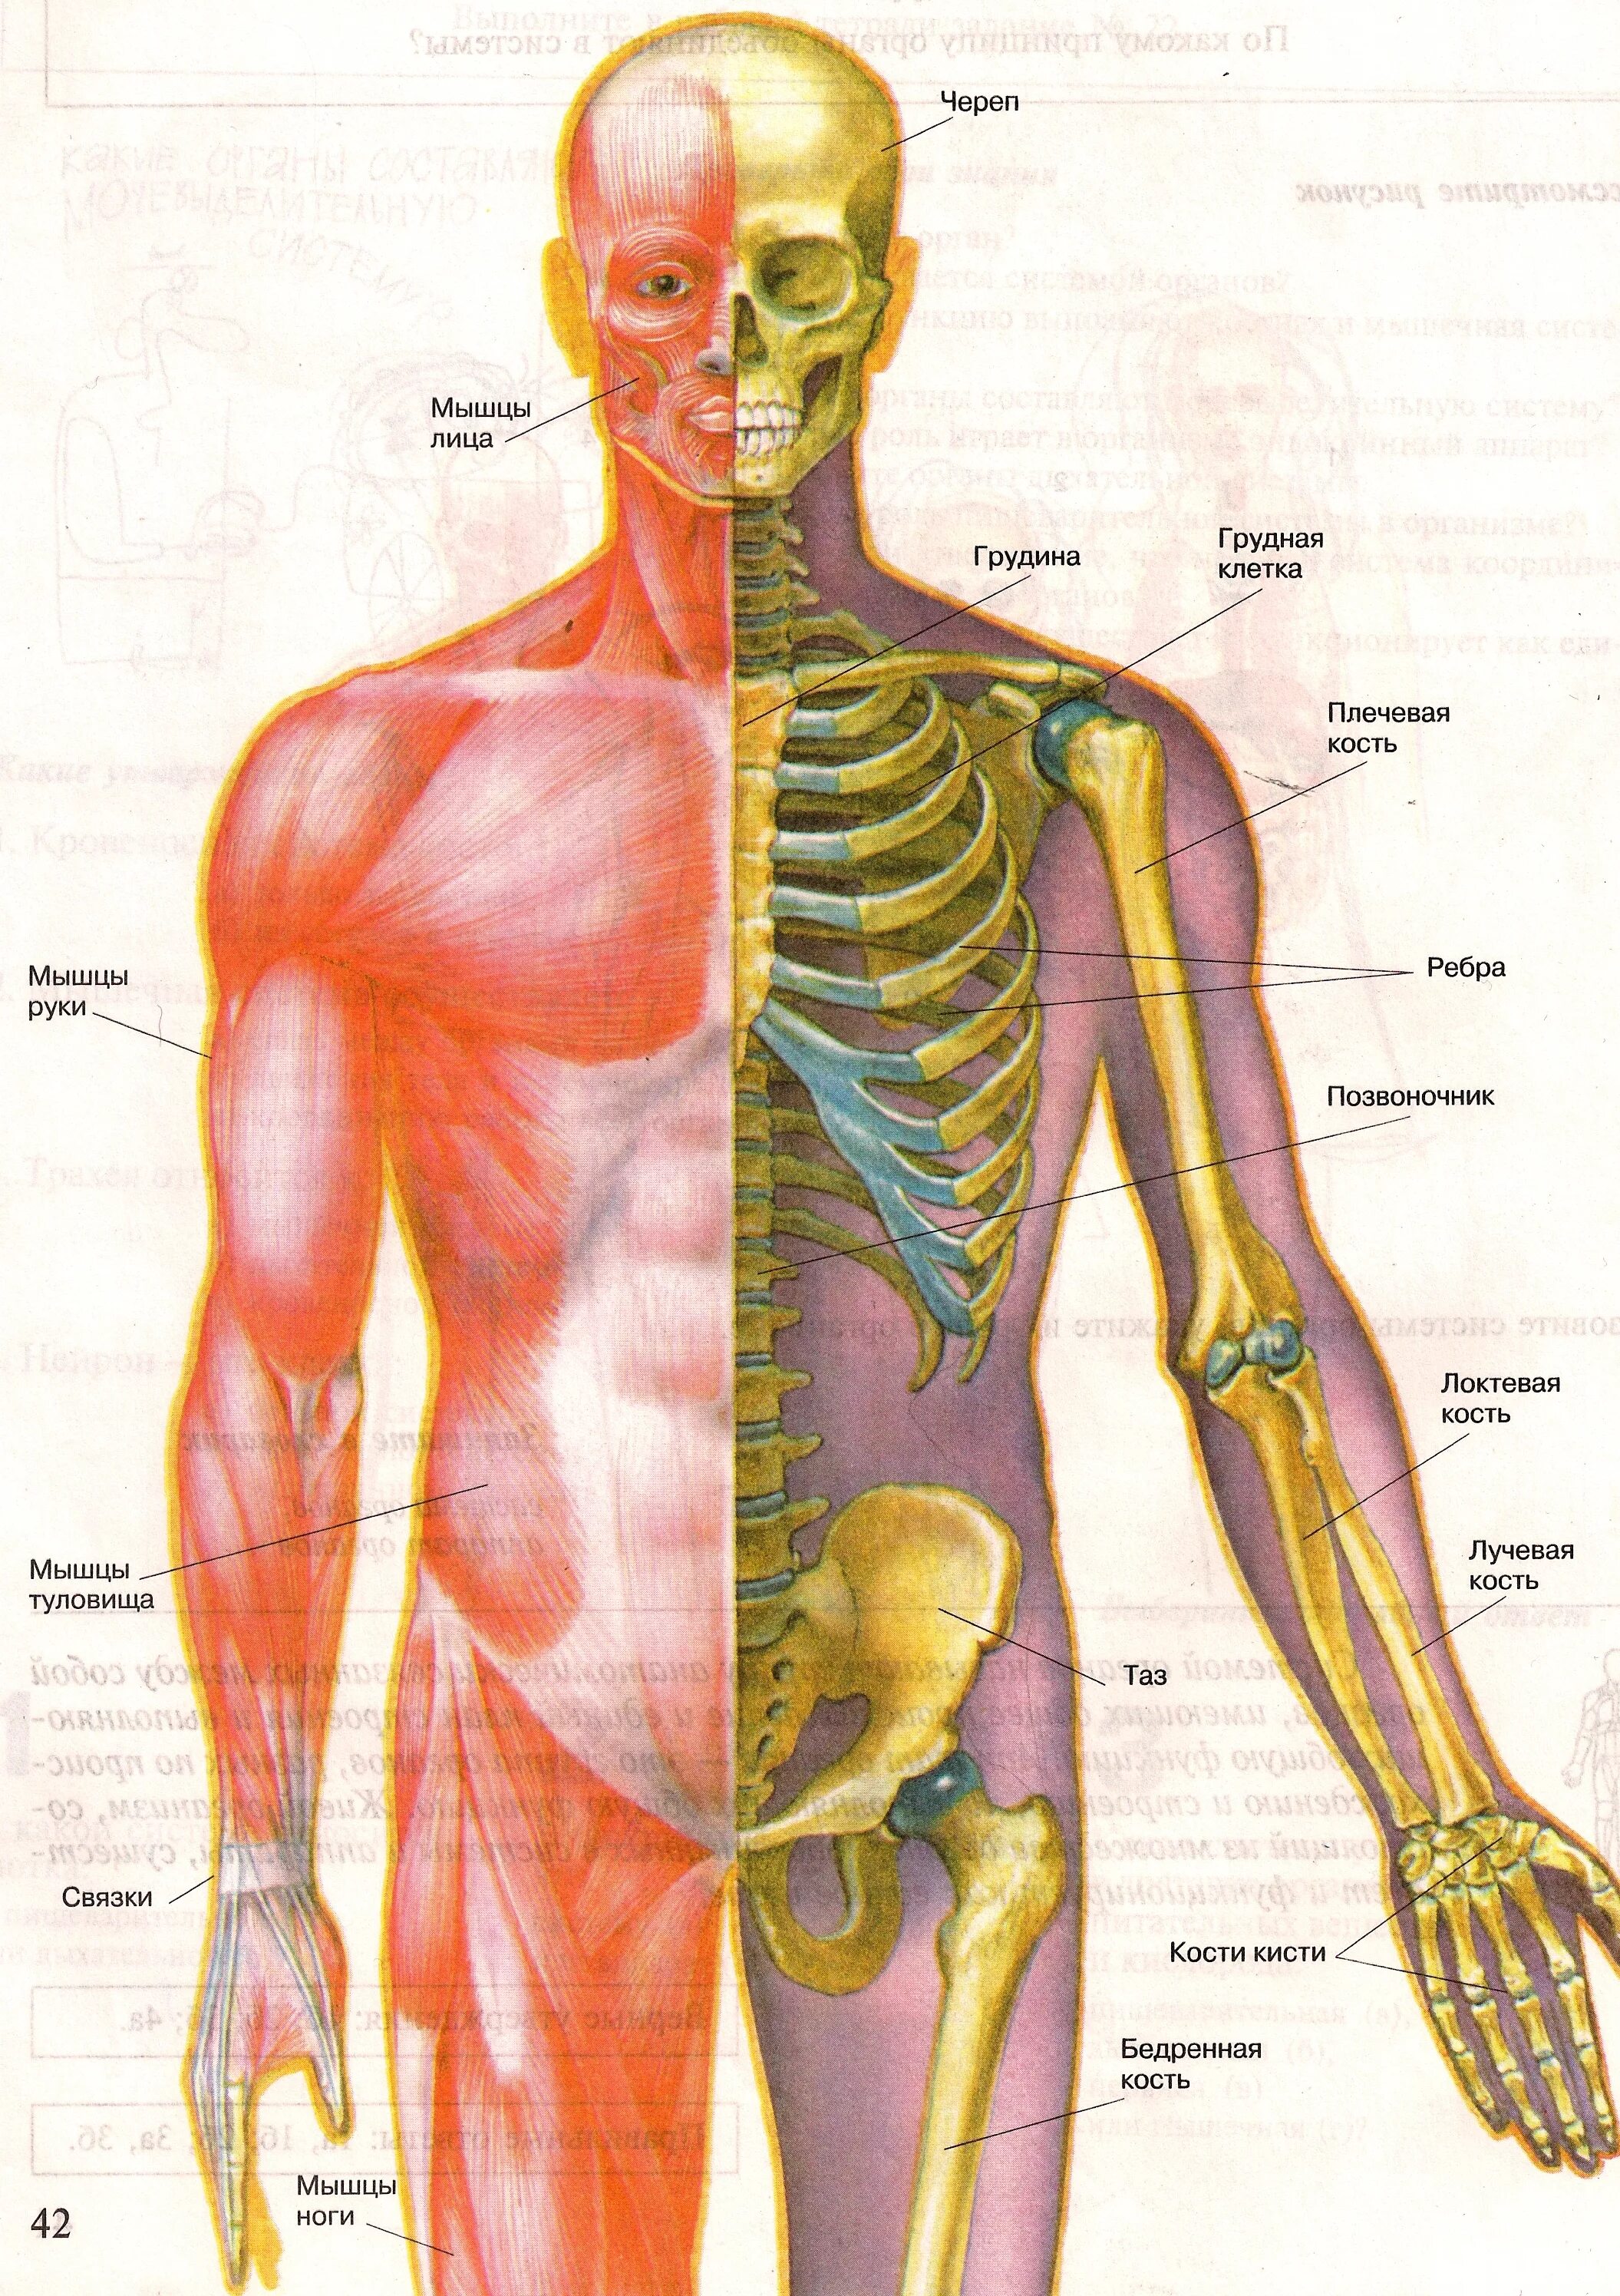 Опорно двигательный аппарат. Строение скелета опорно двигательная система. Болезни костно-мышечной системы (опорно-двигательного аппарата). Опорно двигательная система мышцы человека анатомия. Строение опорно-двигательной системы человека (мышечная система)..